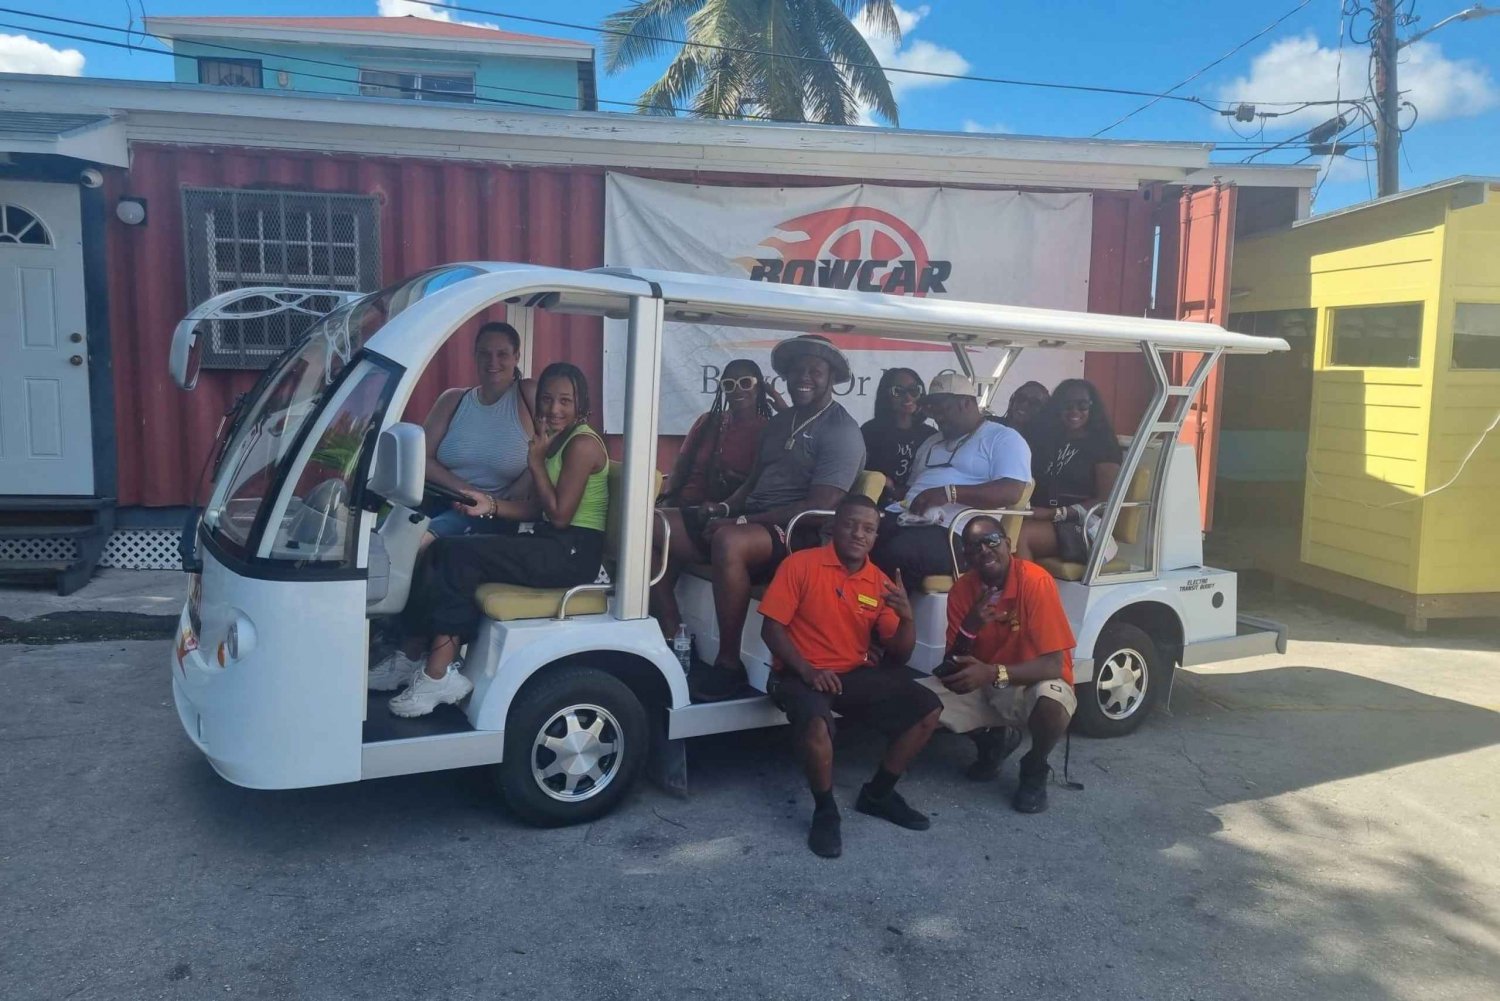 Nassau,Bahamas: Tour en autobús eléctrico,muestras locales de comida y bebida